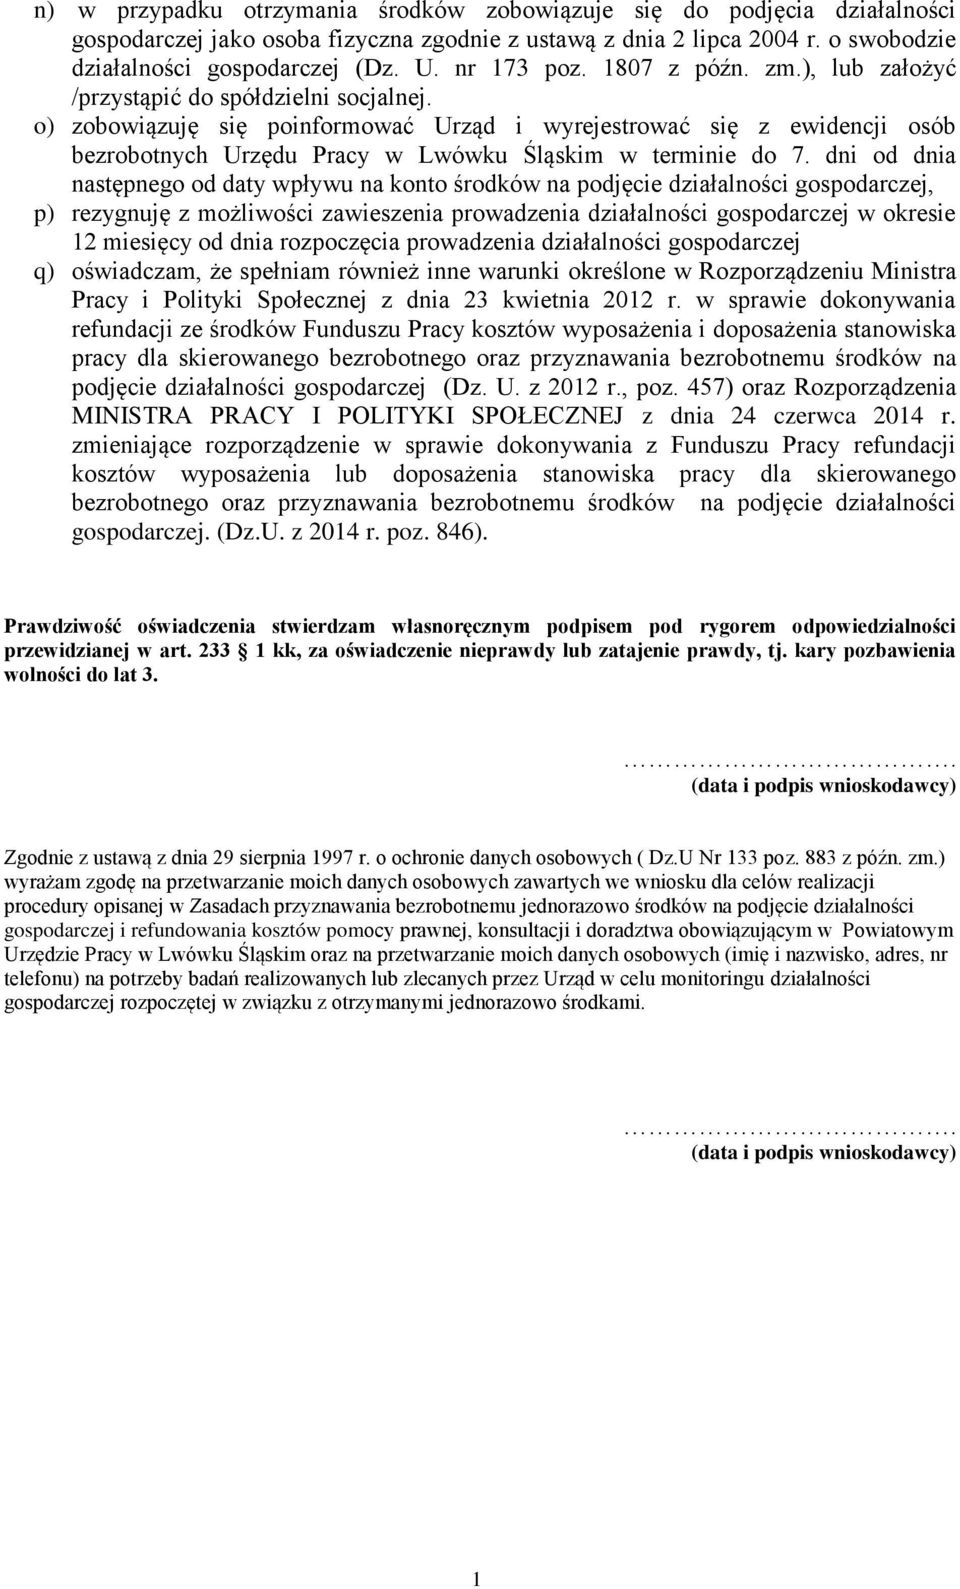 o) zobowiązuję się poinformować Urząd i wyrejestrować się z ewidencji osób bezrobotnych Urzędu Pracy w Lwówku Śląskim w terminie do 7.